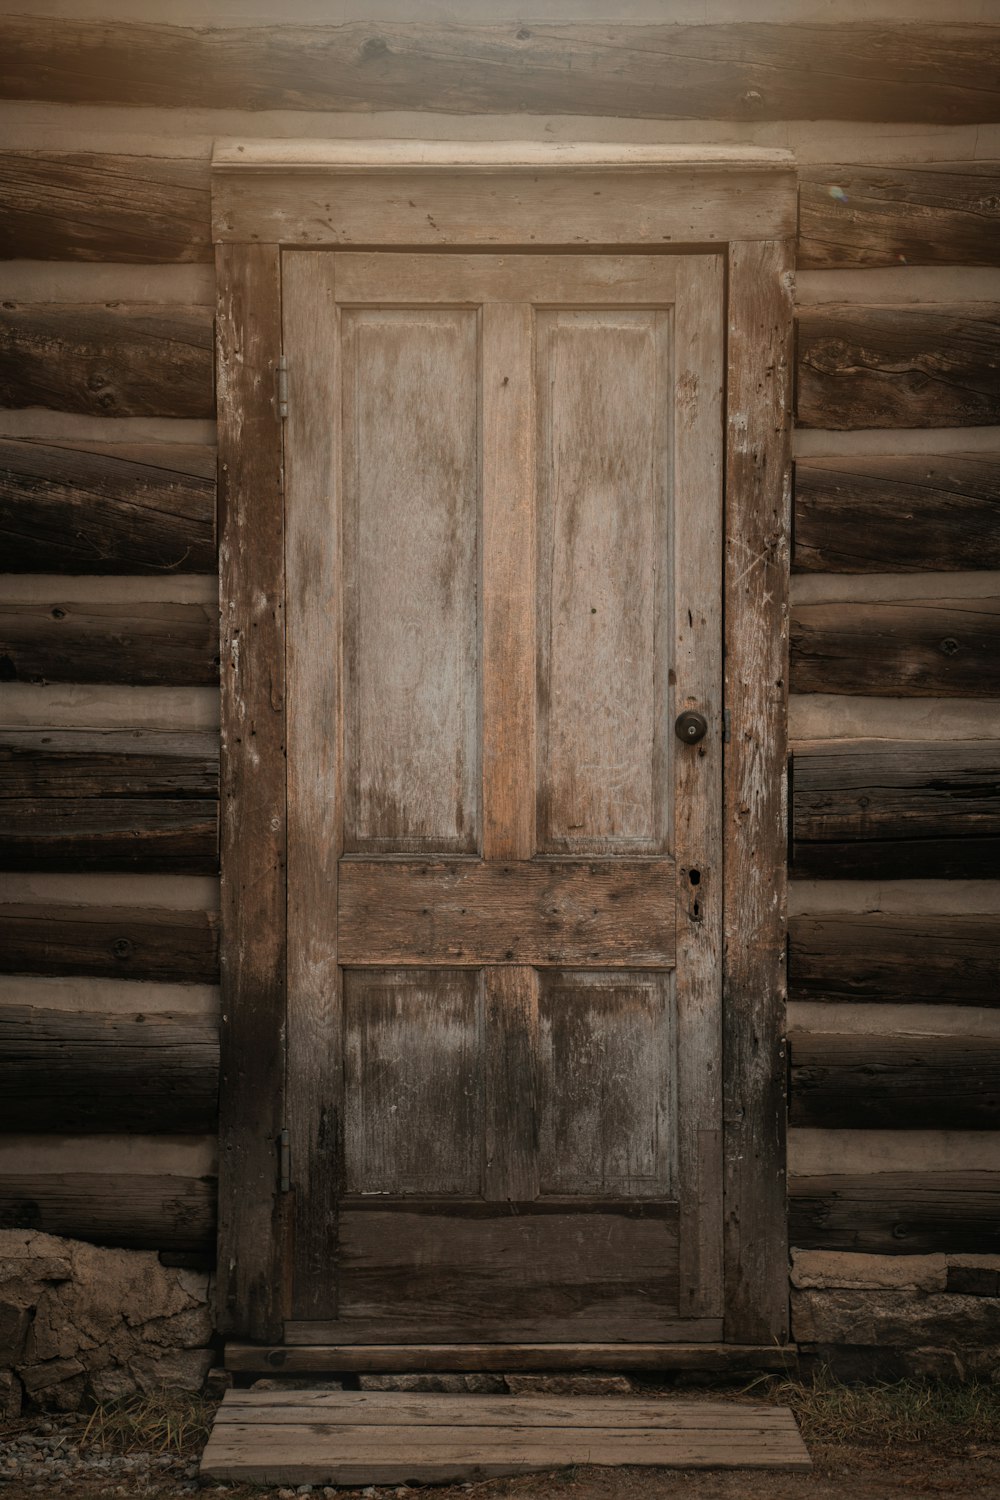 a wooden door in a wooden building